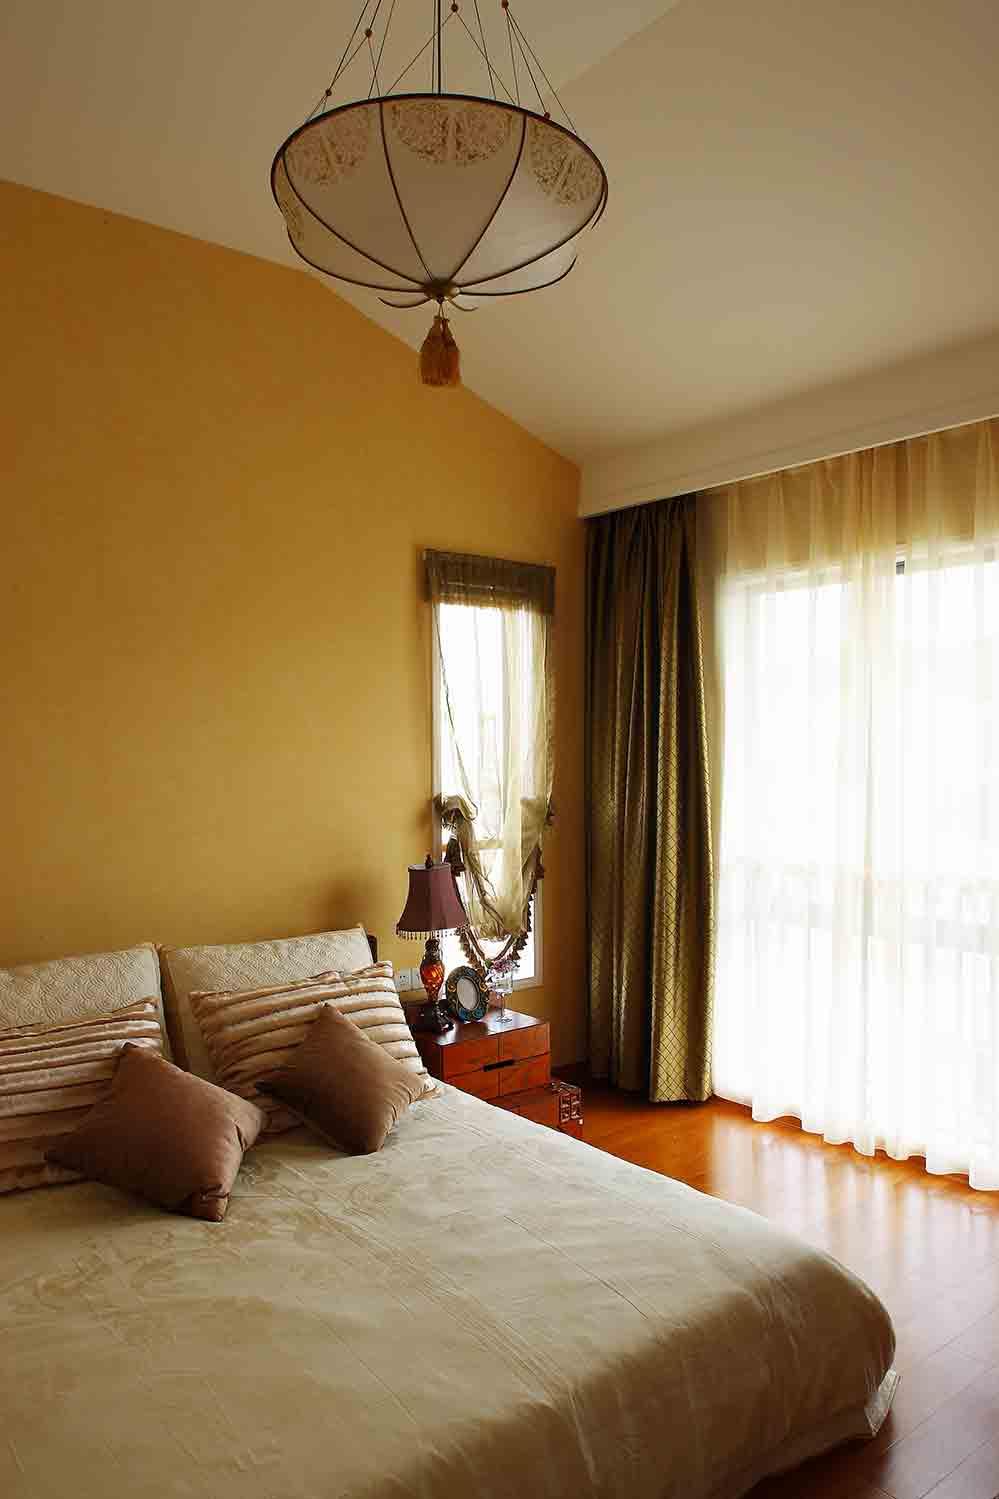 静谧舒适的卧室空间装饰简单，透过窗户的自然光增添了一丝惬意。